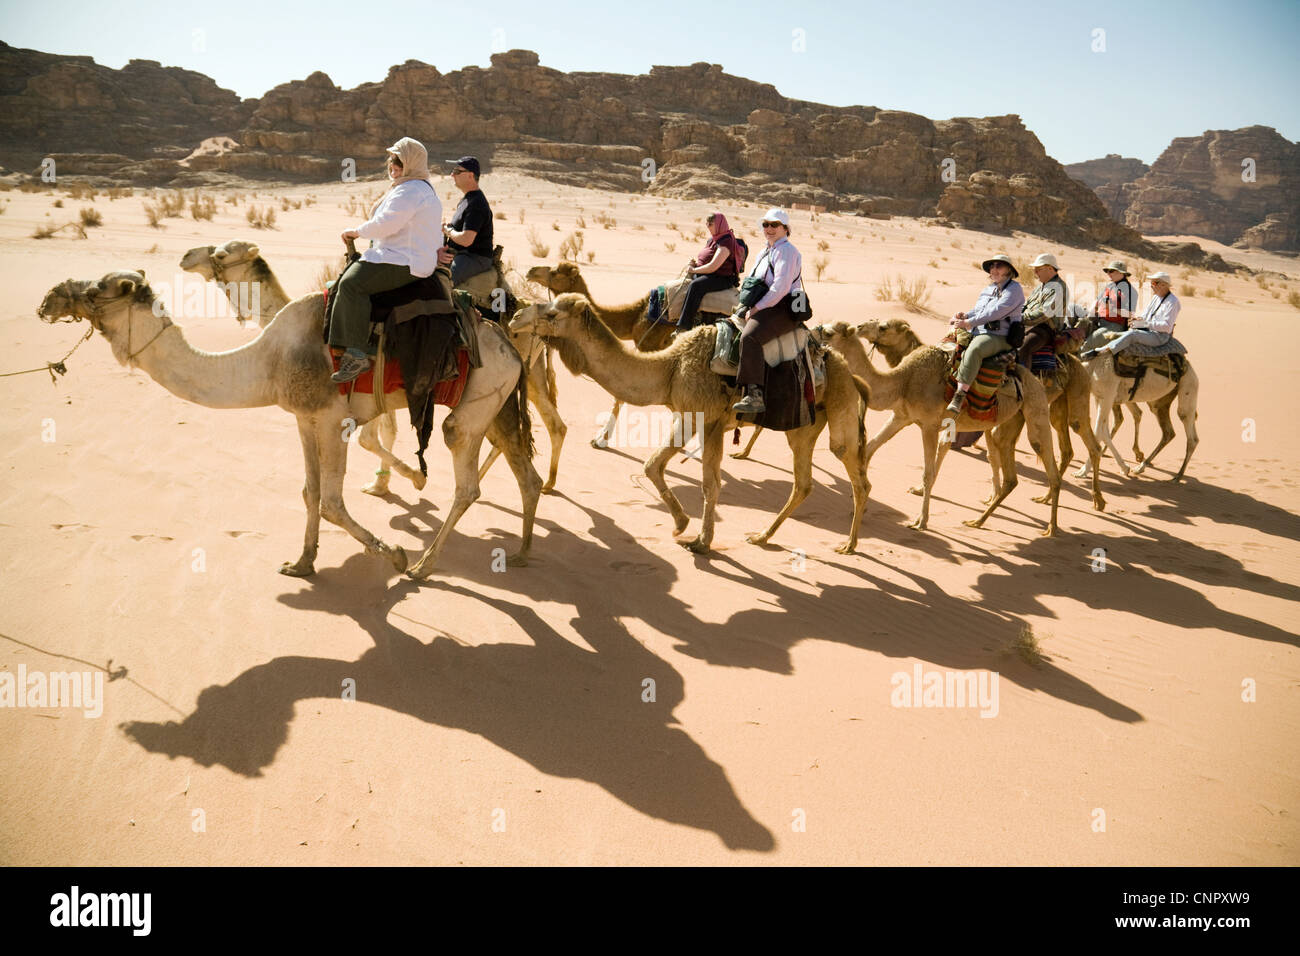 Jordania turistas; las personas de mediana edad montar camellos en el desierto de Wadi Rum, Jordania Oriente Medio Foto de stock